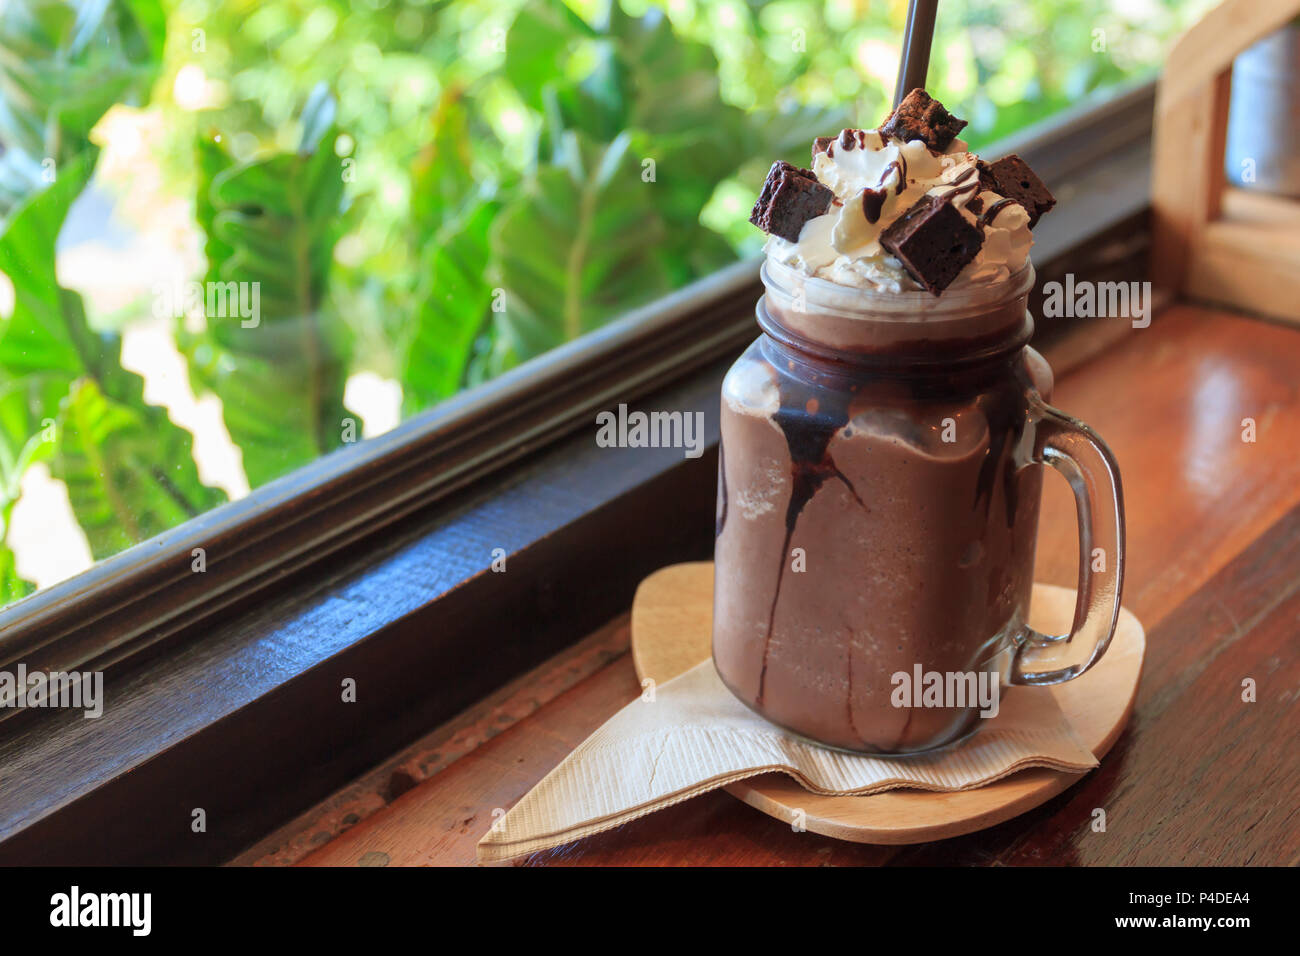 Lait frappé au chocolat avec crème fouettée brownie sur table en bois, fenêtre en arrière-plan, de boissons café de l'été. Banque D'Images